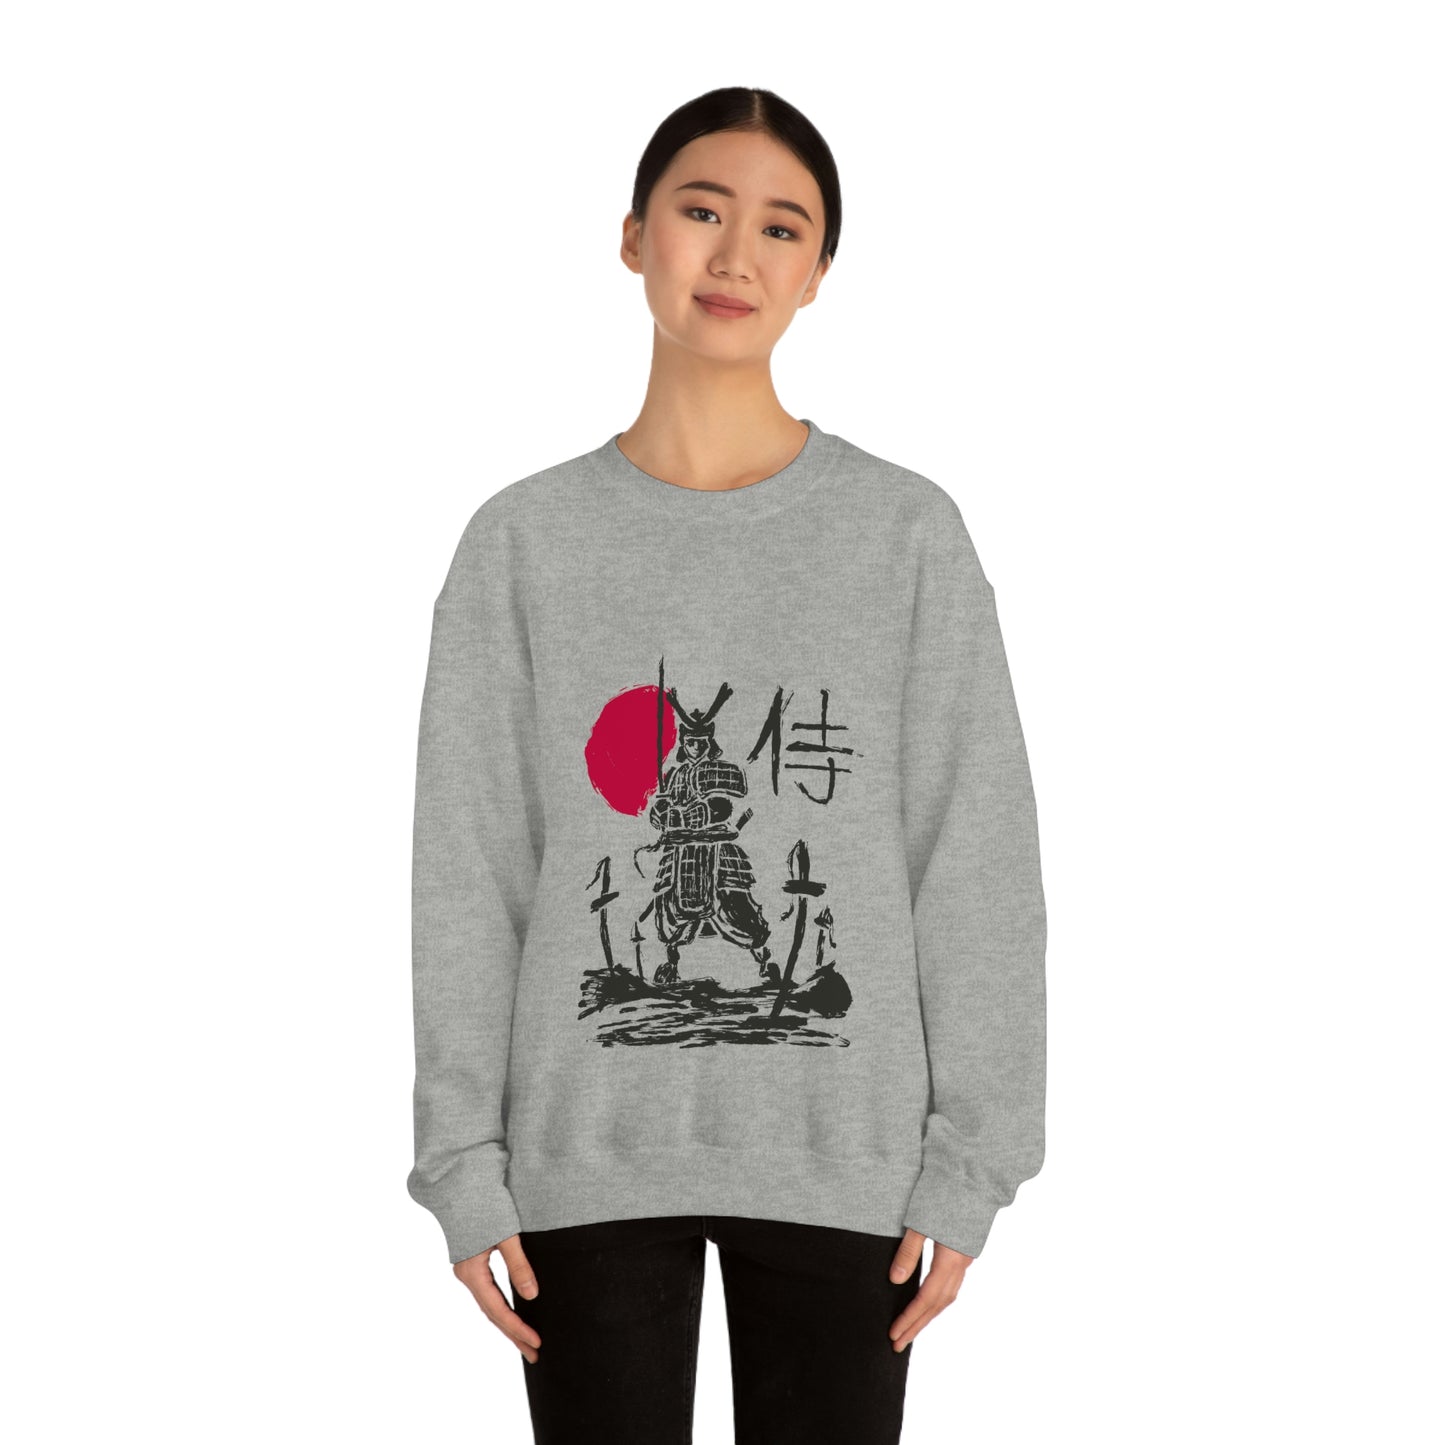 Japanese Aesthetic Samurai Graphic Sweatshirt